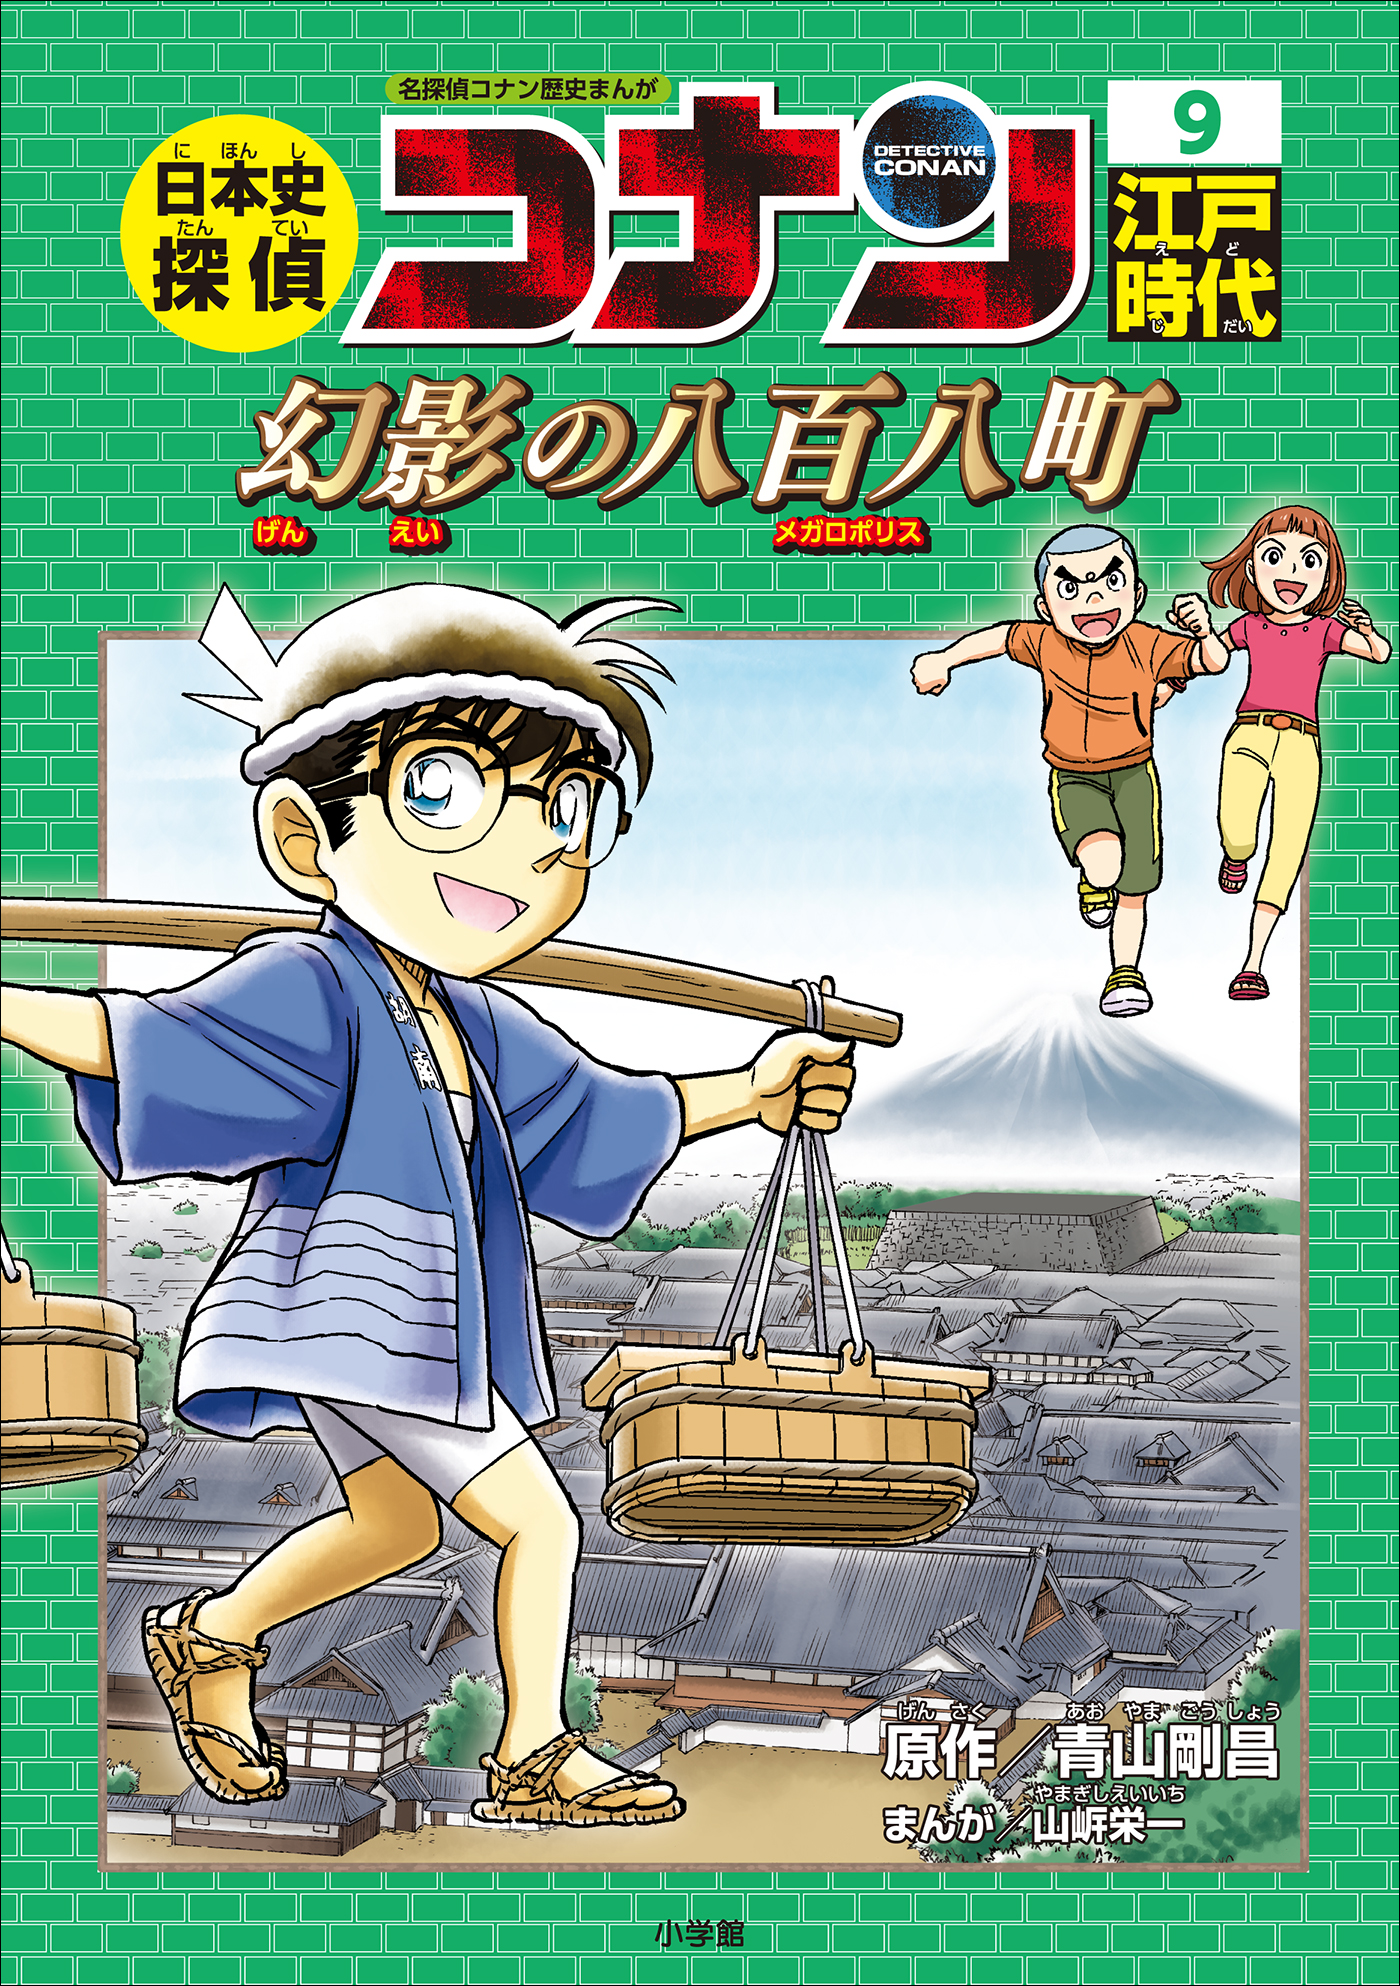 日本史探偵 コナンシリーズ本・雑誌・漫画 - 文学・小説